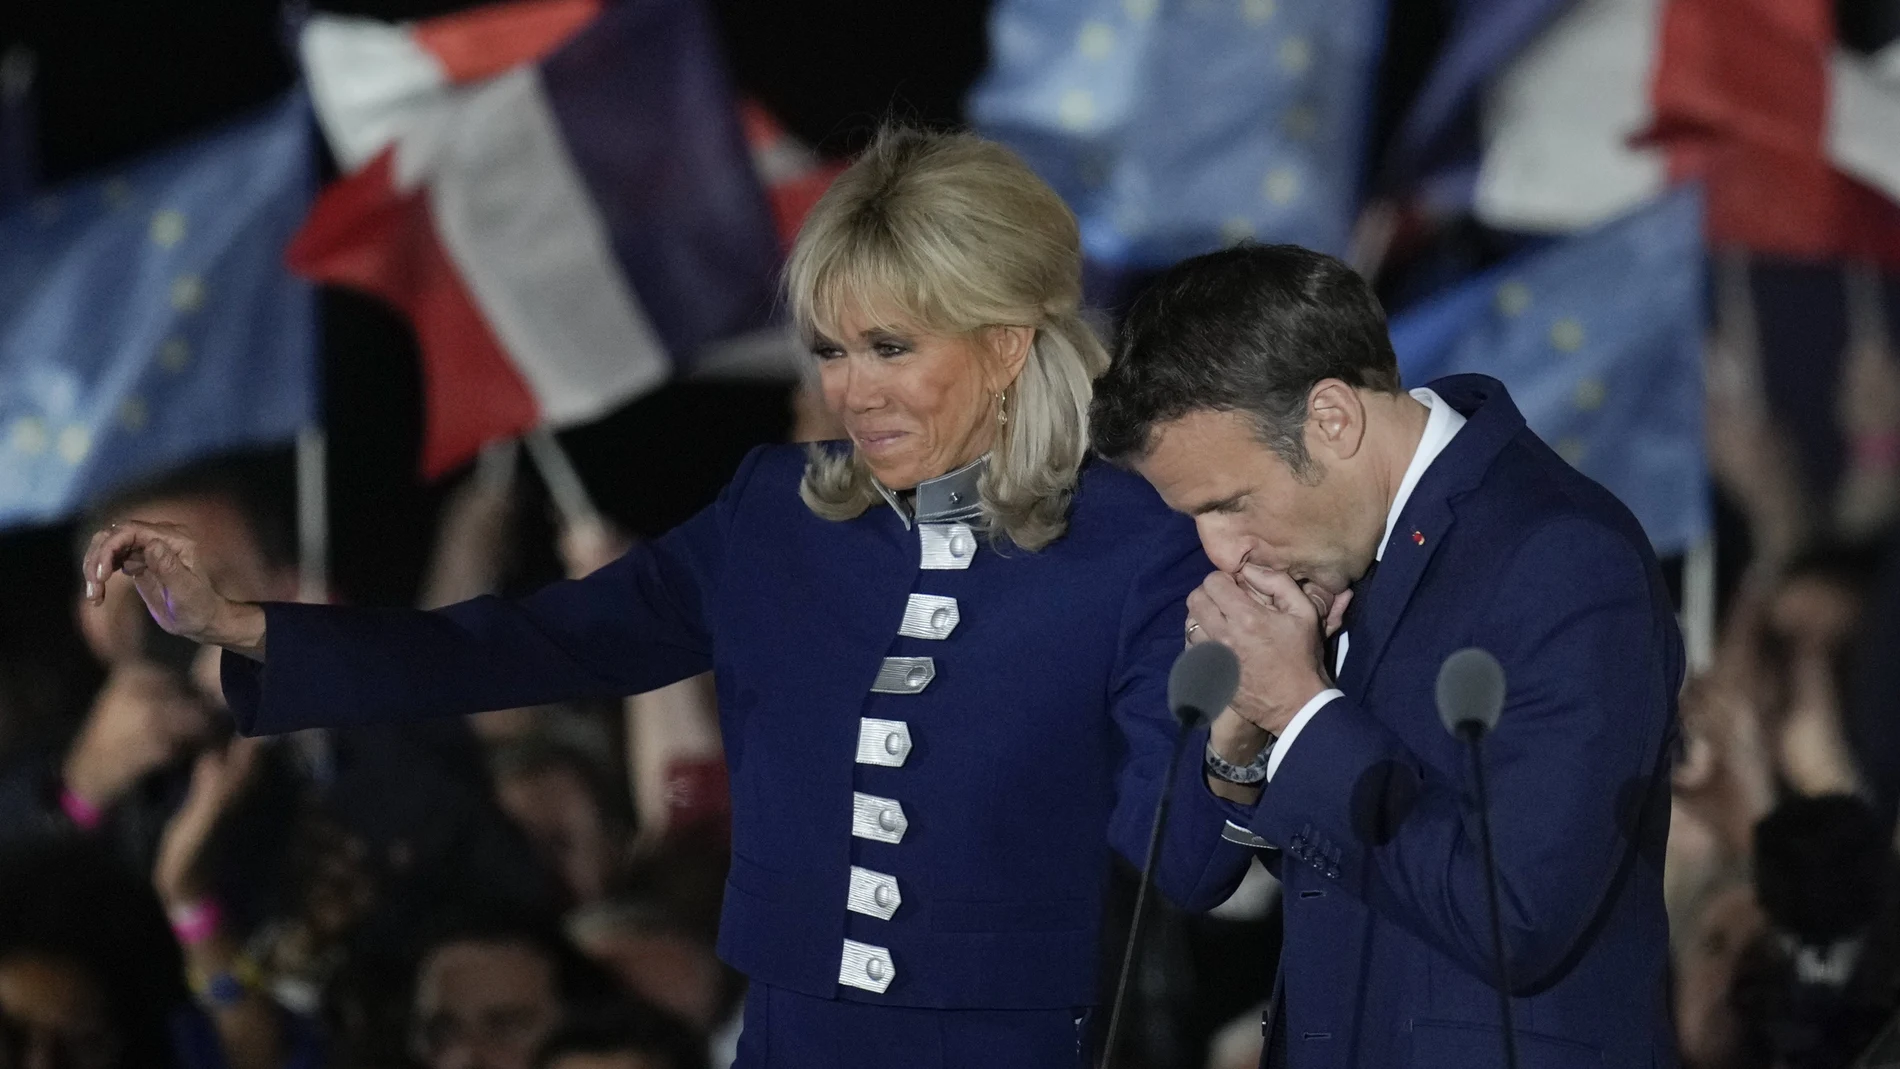 El presidente francés celebró la victoria junto a su mujer y sus seguidores en el Campo de Marte en París